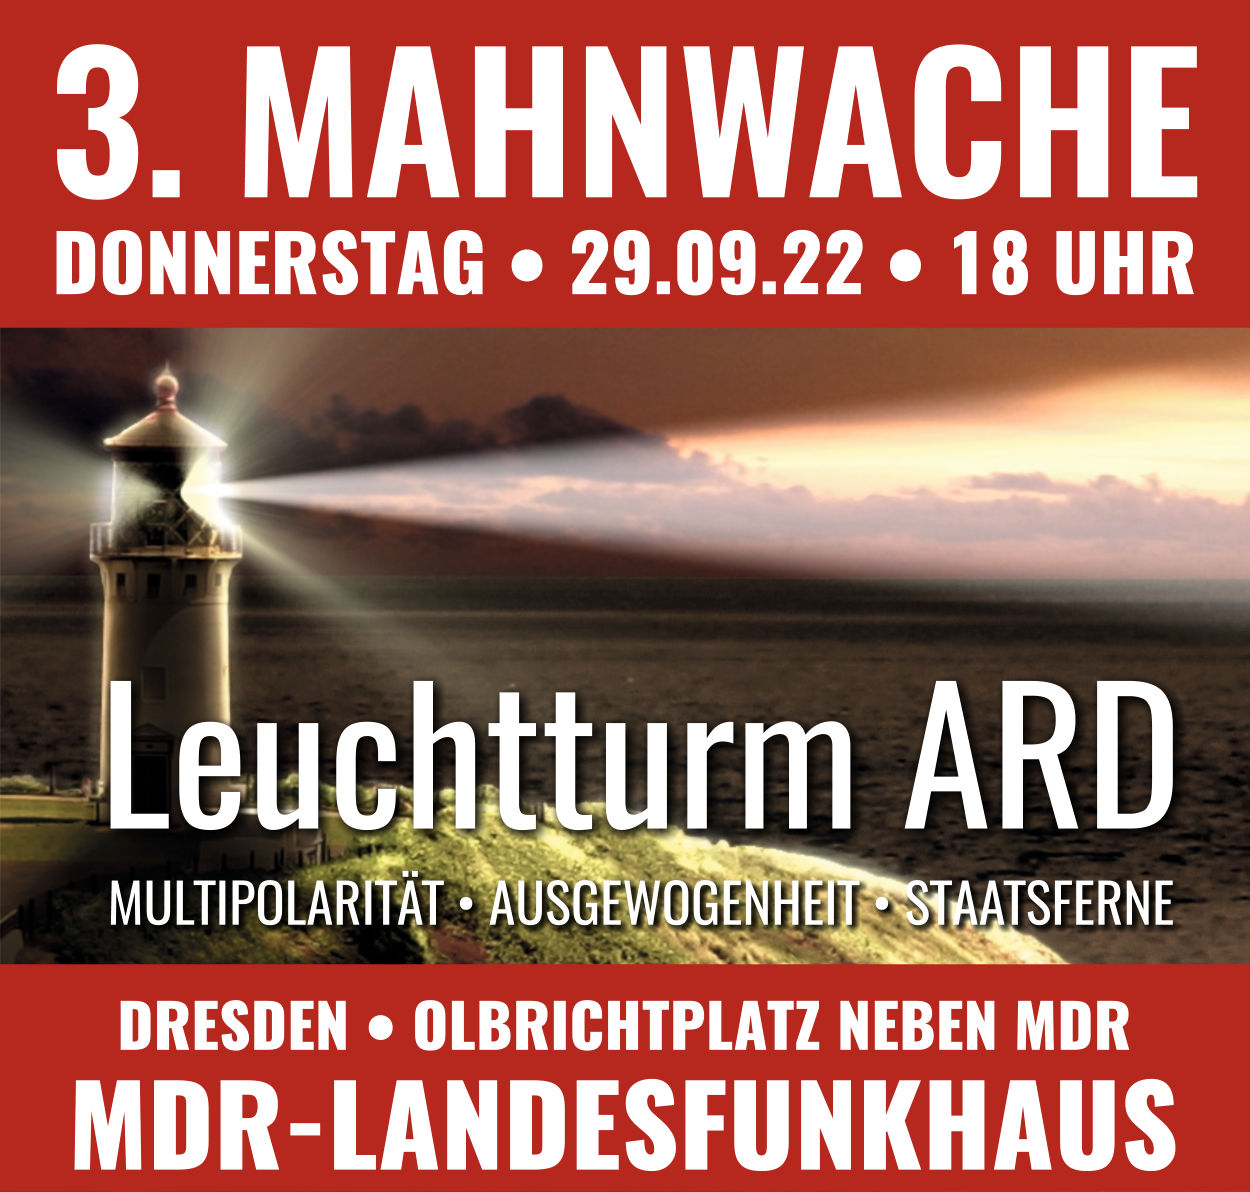 3. Mahnwache Leuchtturm ARD in Dresden